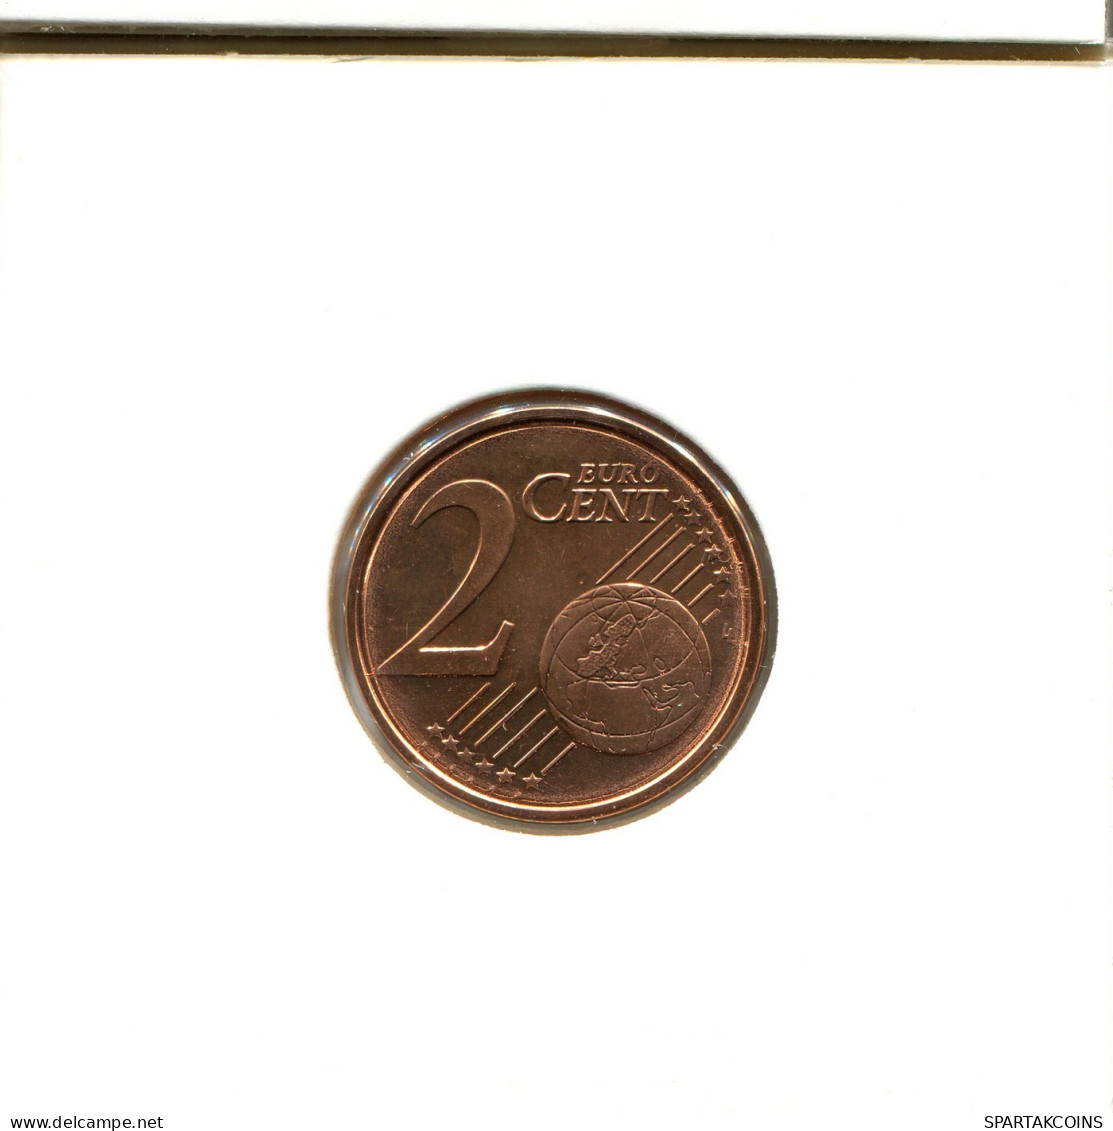 2 EURO CENTS 2010 GREECE Coin #EU179.U.A - Grecia